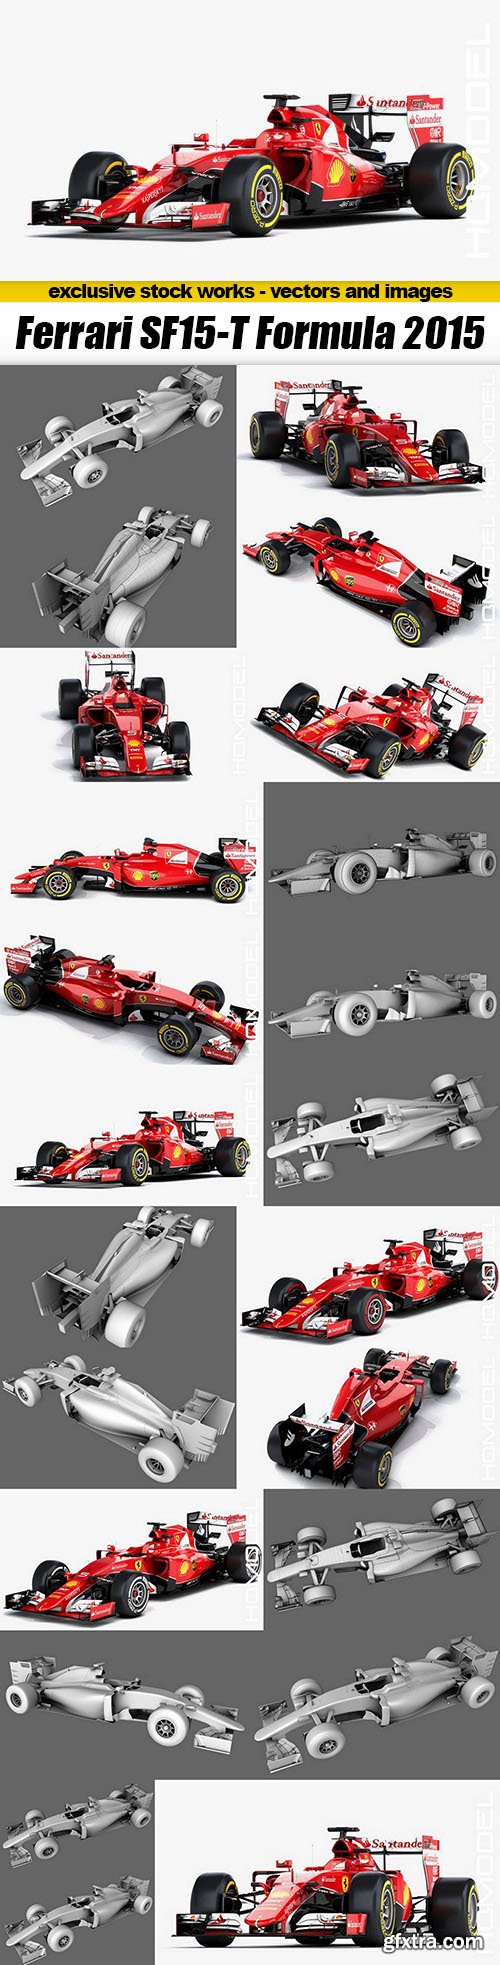 CGTrader 3D MODELS - Ferrari SF15-T Formula 2015